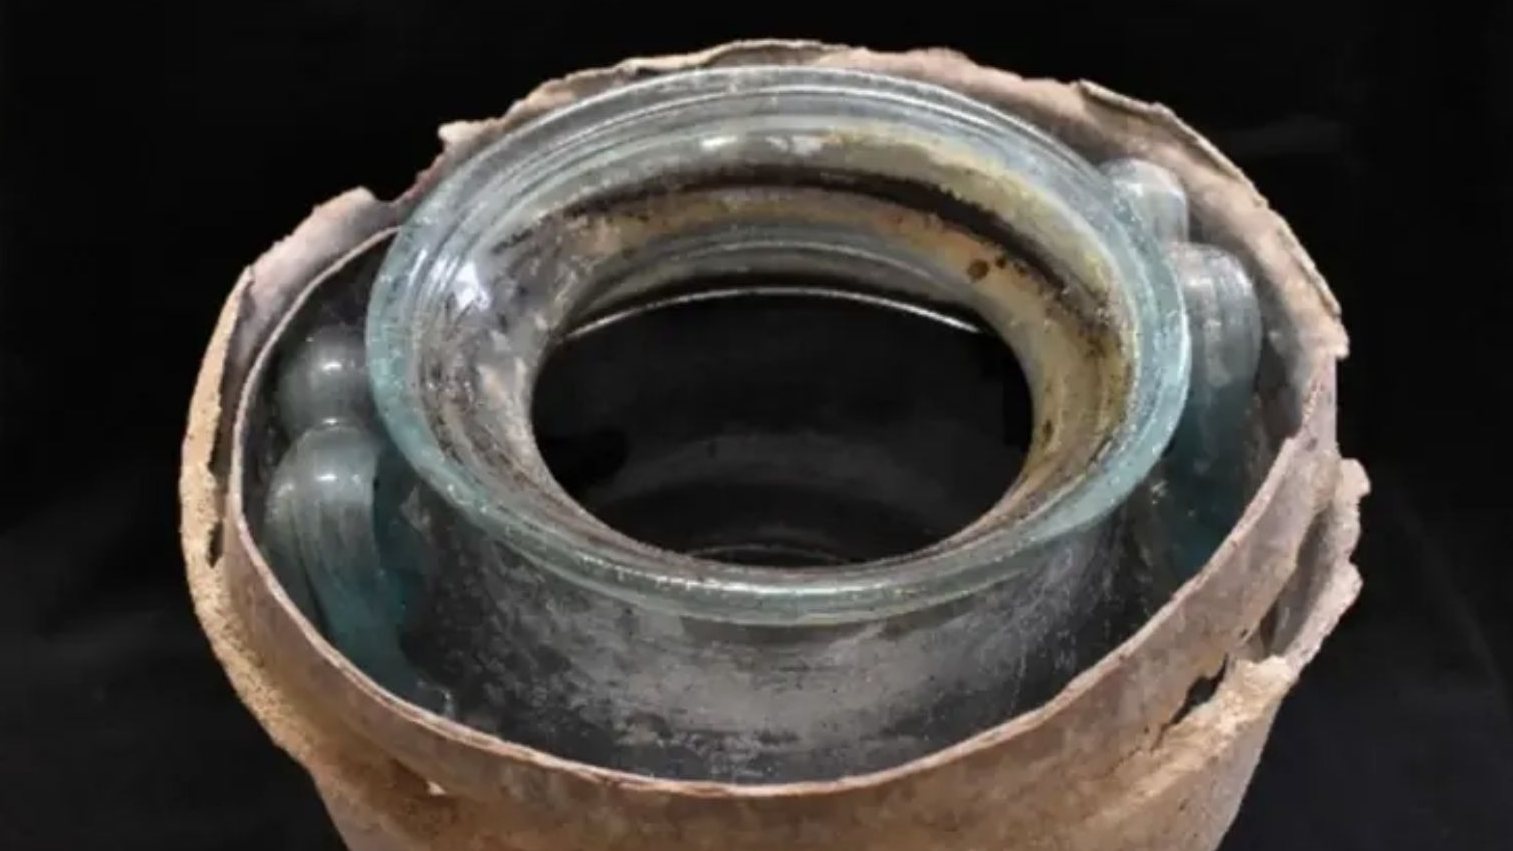 Vinho com 2 mil anos encontrado em urna funerária de vidro com restos mortais em Carmona